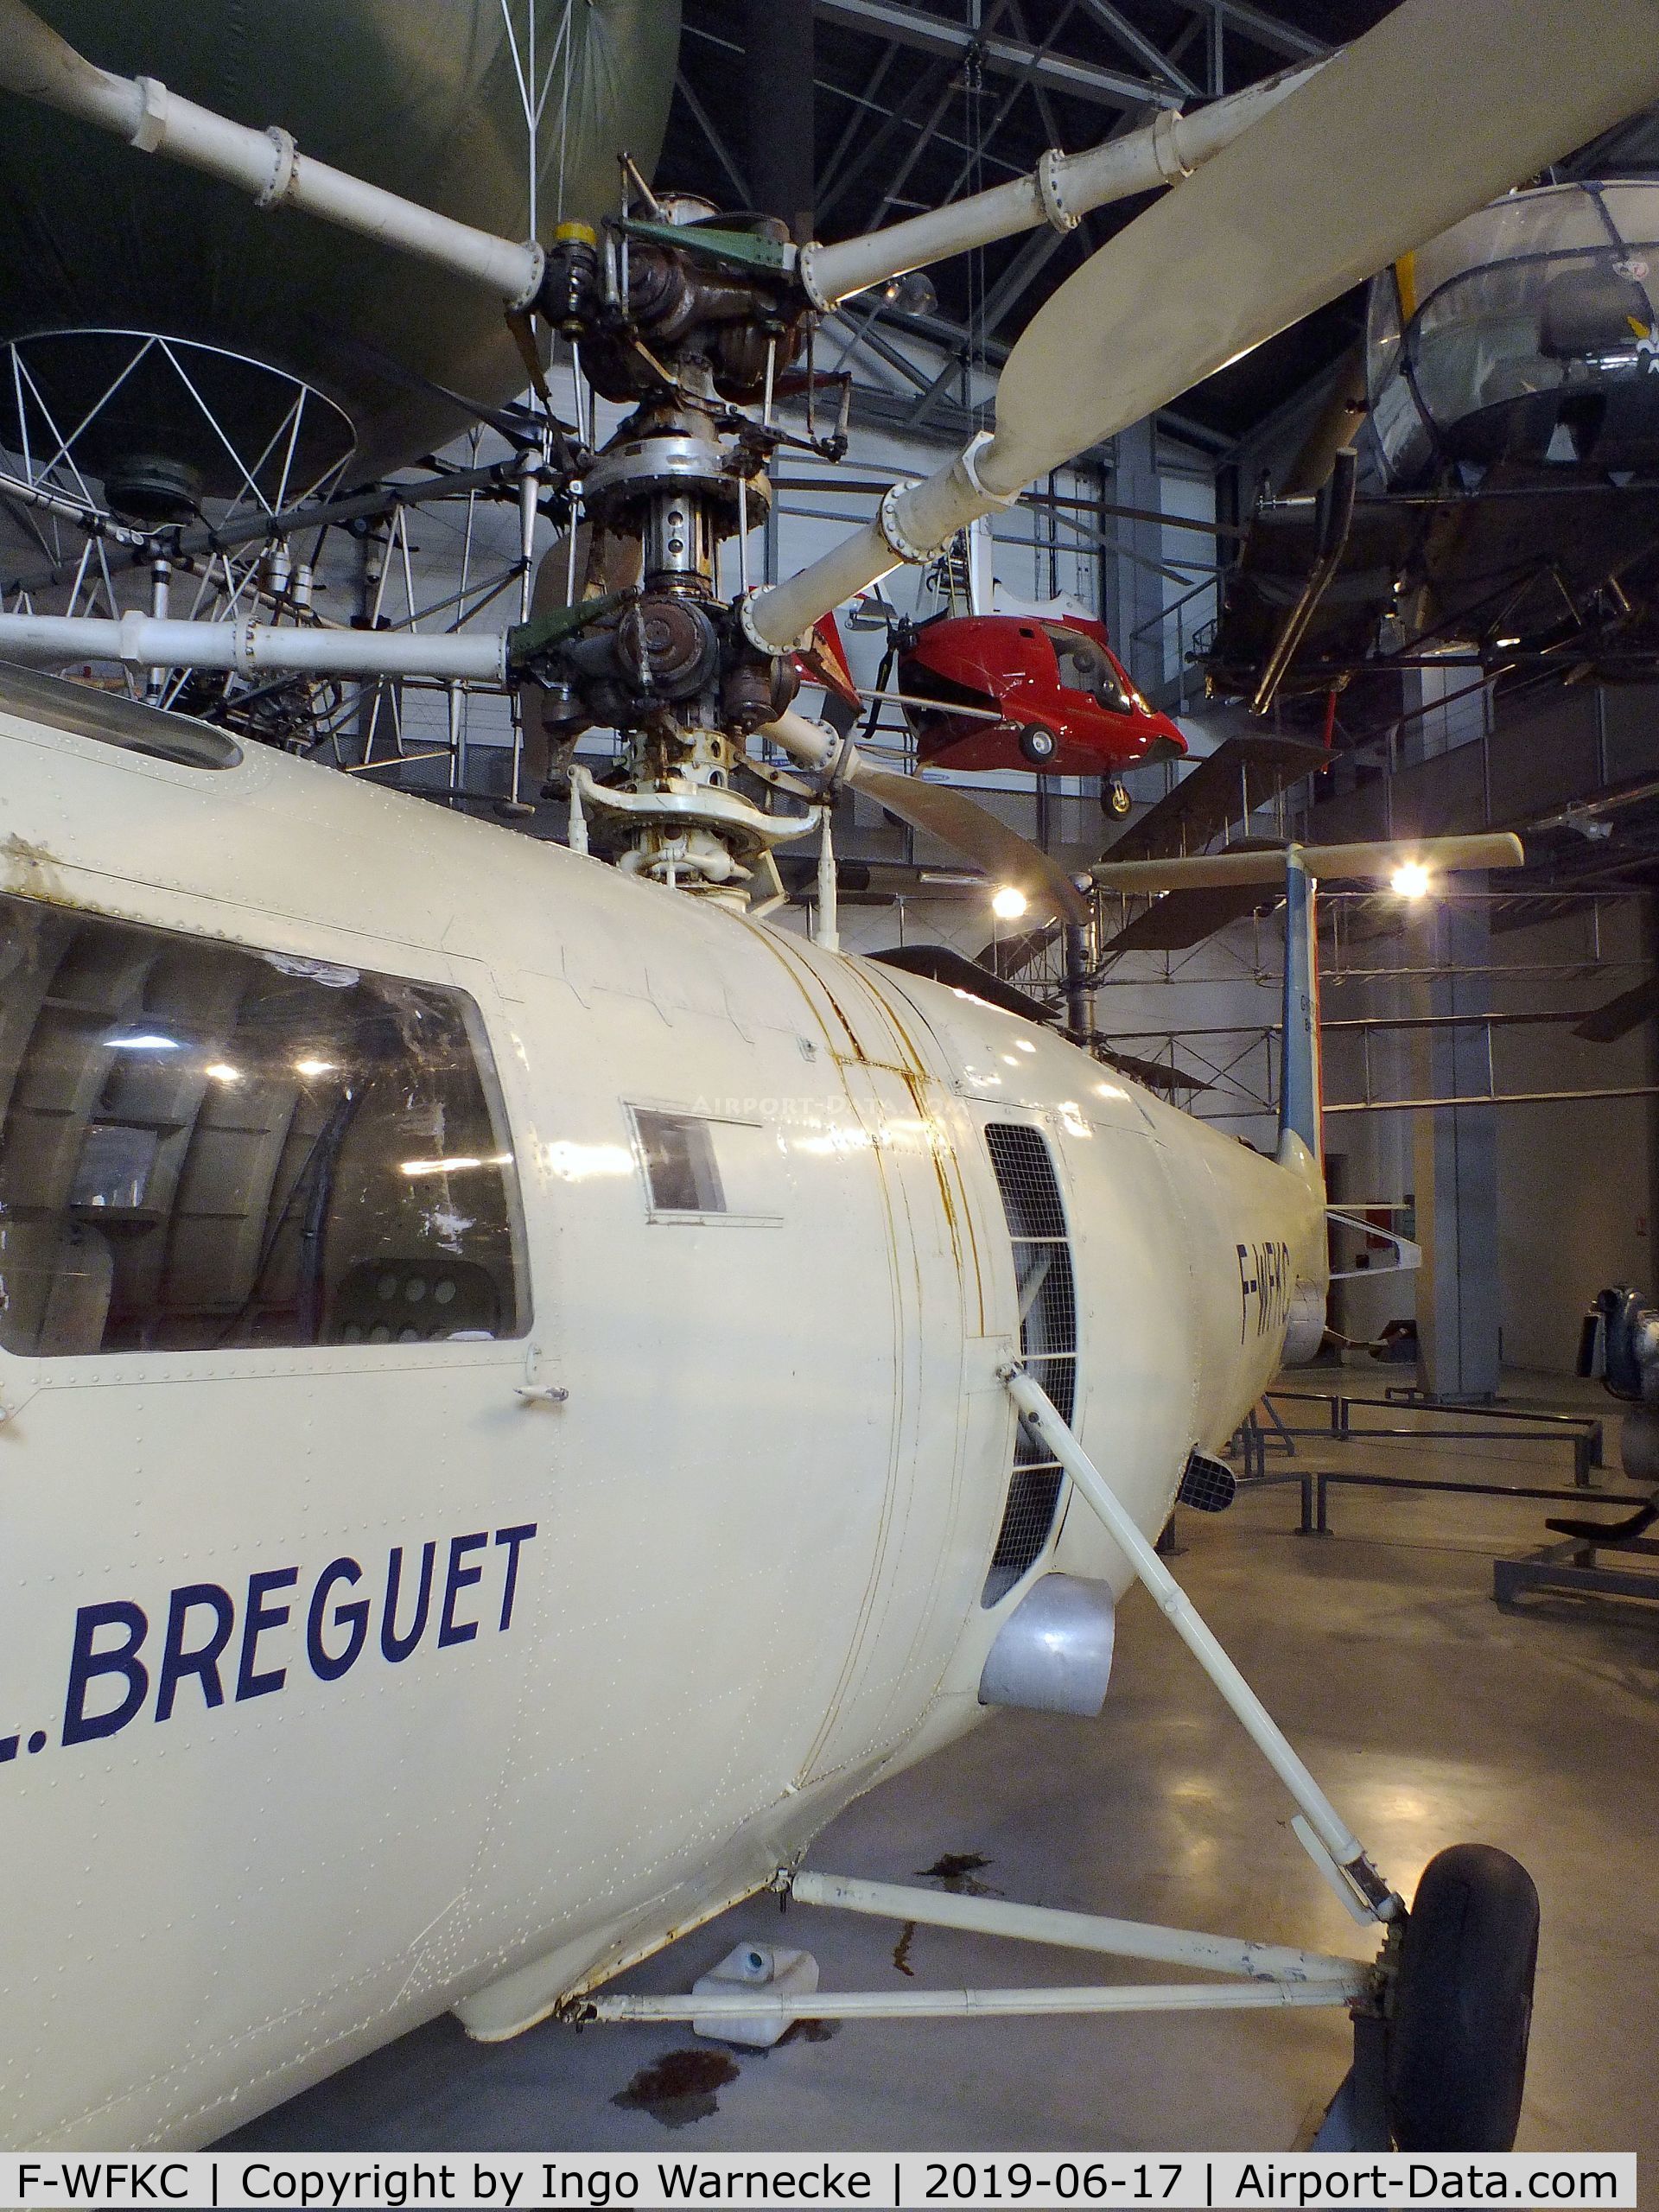 F-WFKC, Breguet 111 Gyroplane C/N 01, Breguet 111 Gyroplane at the Musee de l'Air, Paris/Le Bourget